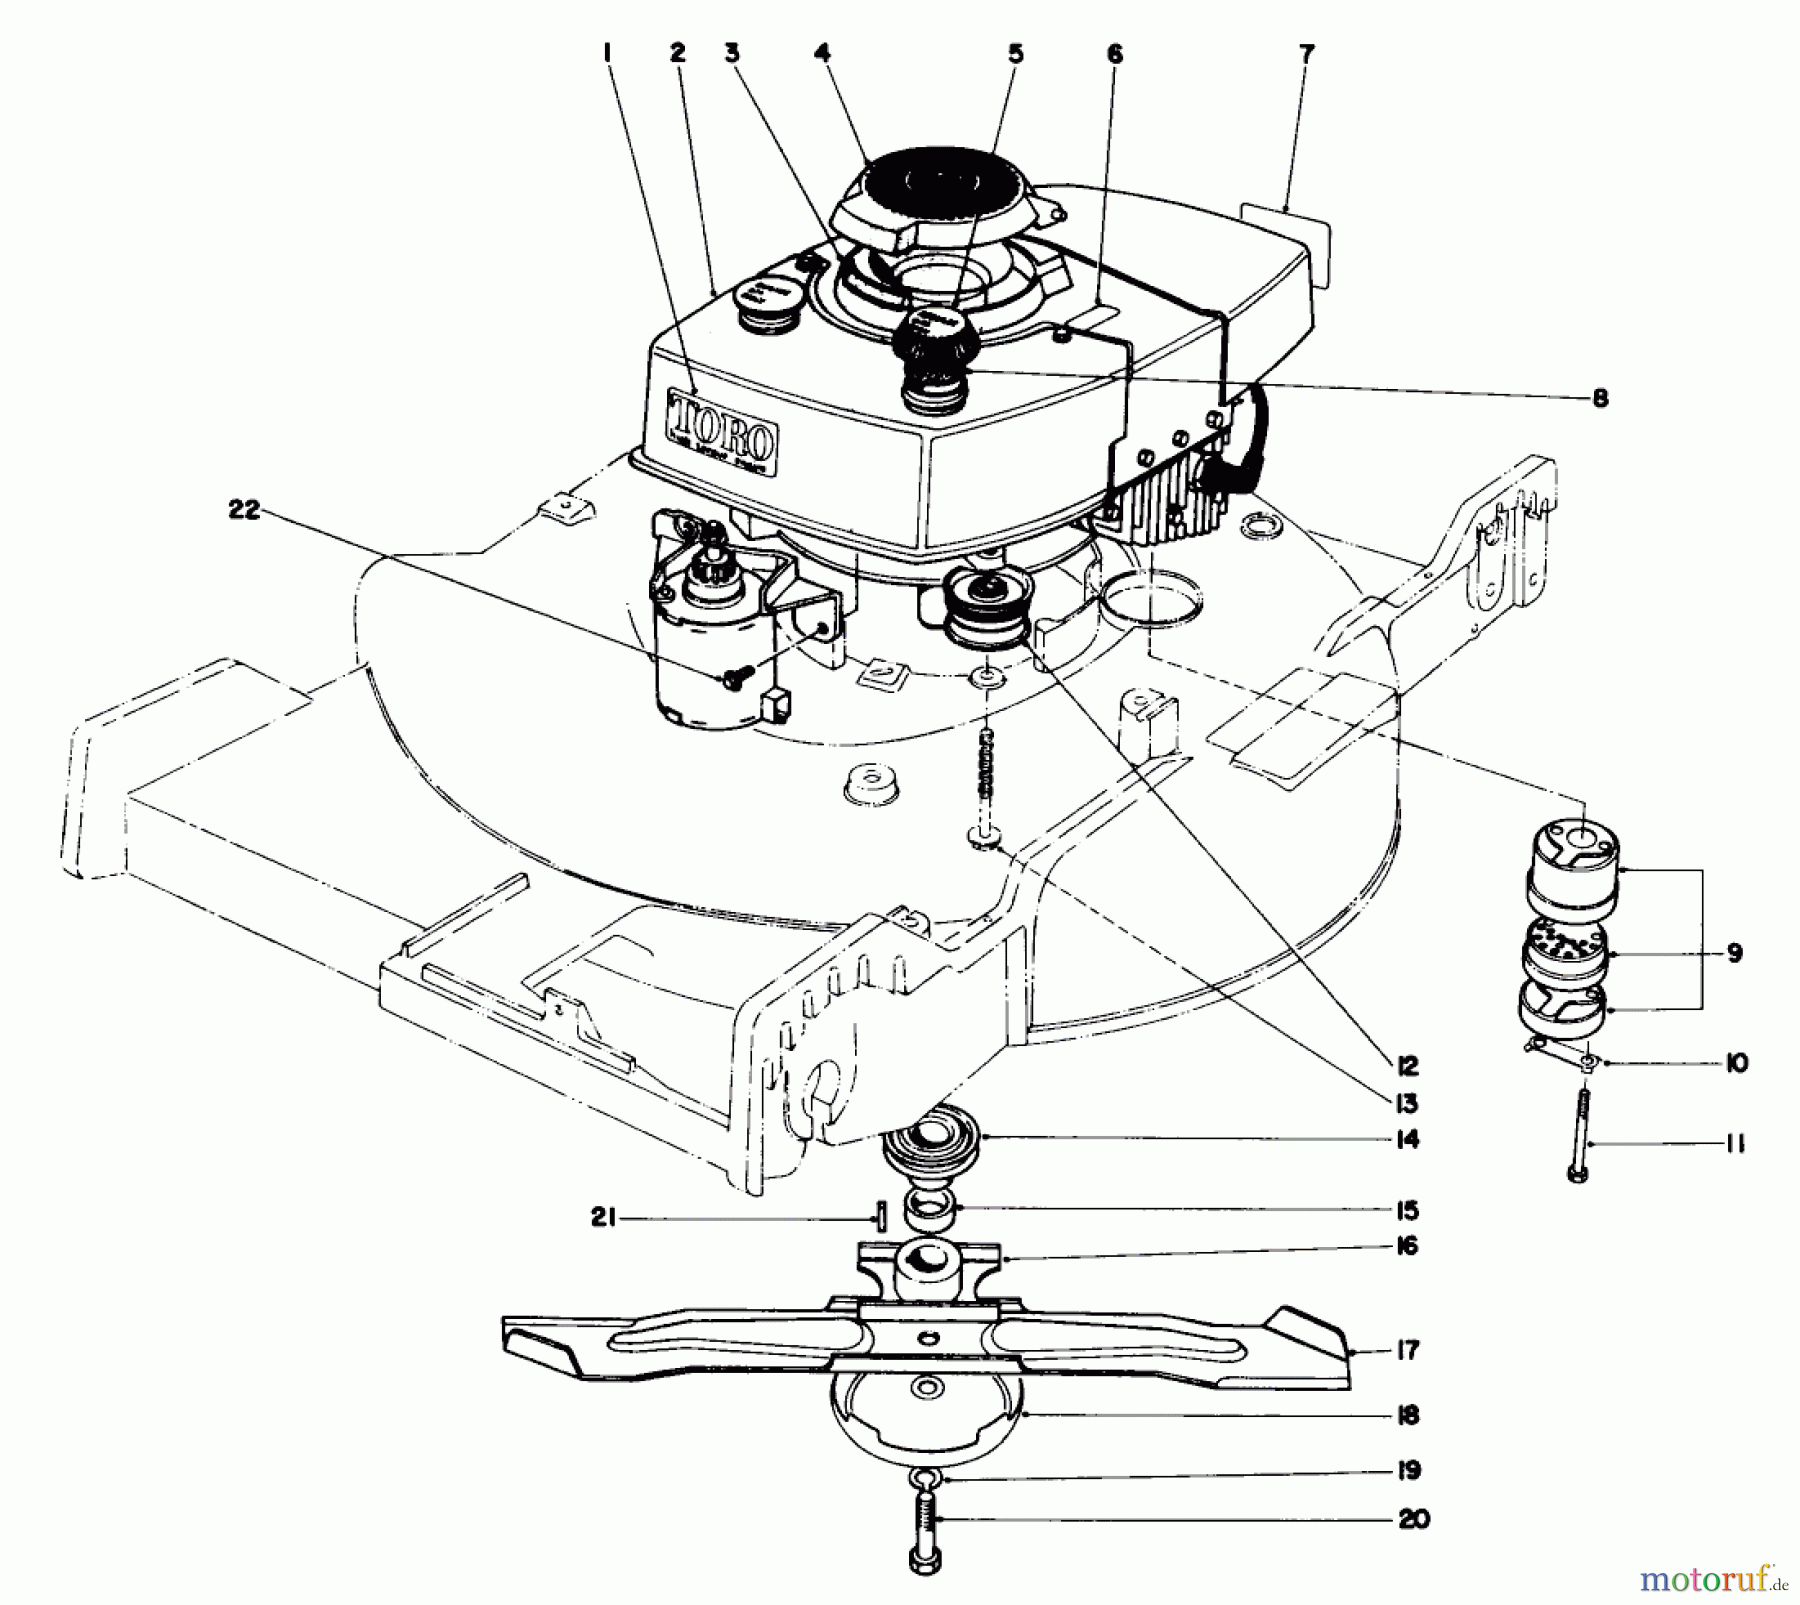  Toro Neu Mowers, Walk-Behind Seite 1 20550 - Toro Lawnmower, 1974 (4000001-4999999) ENGINE ASSEMBLY MODEL NO. 20660